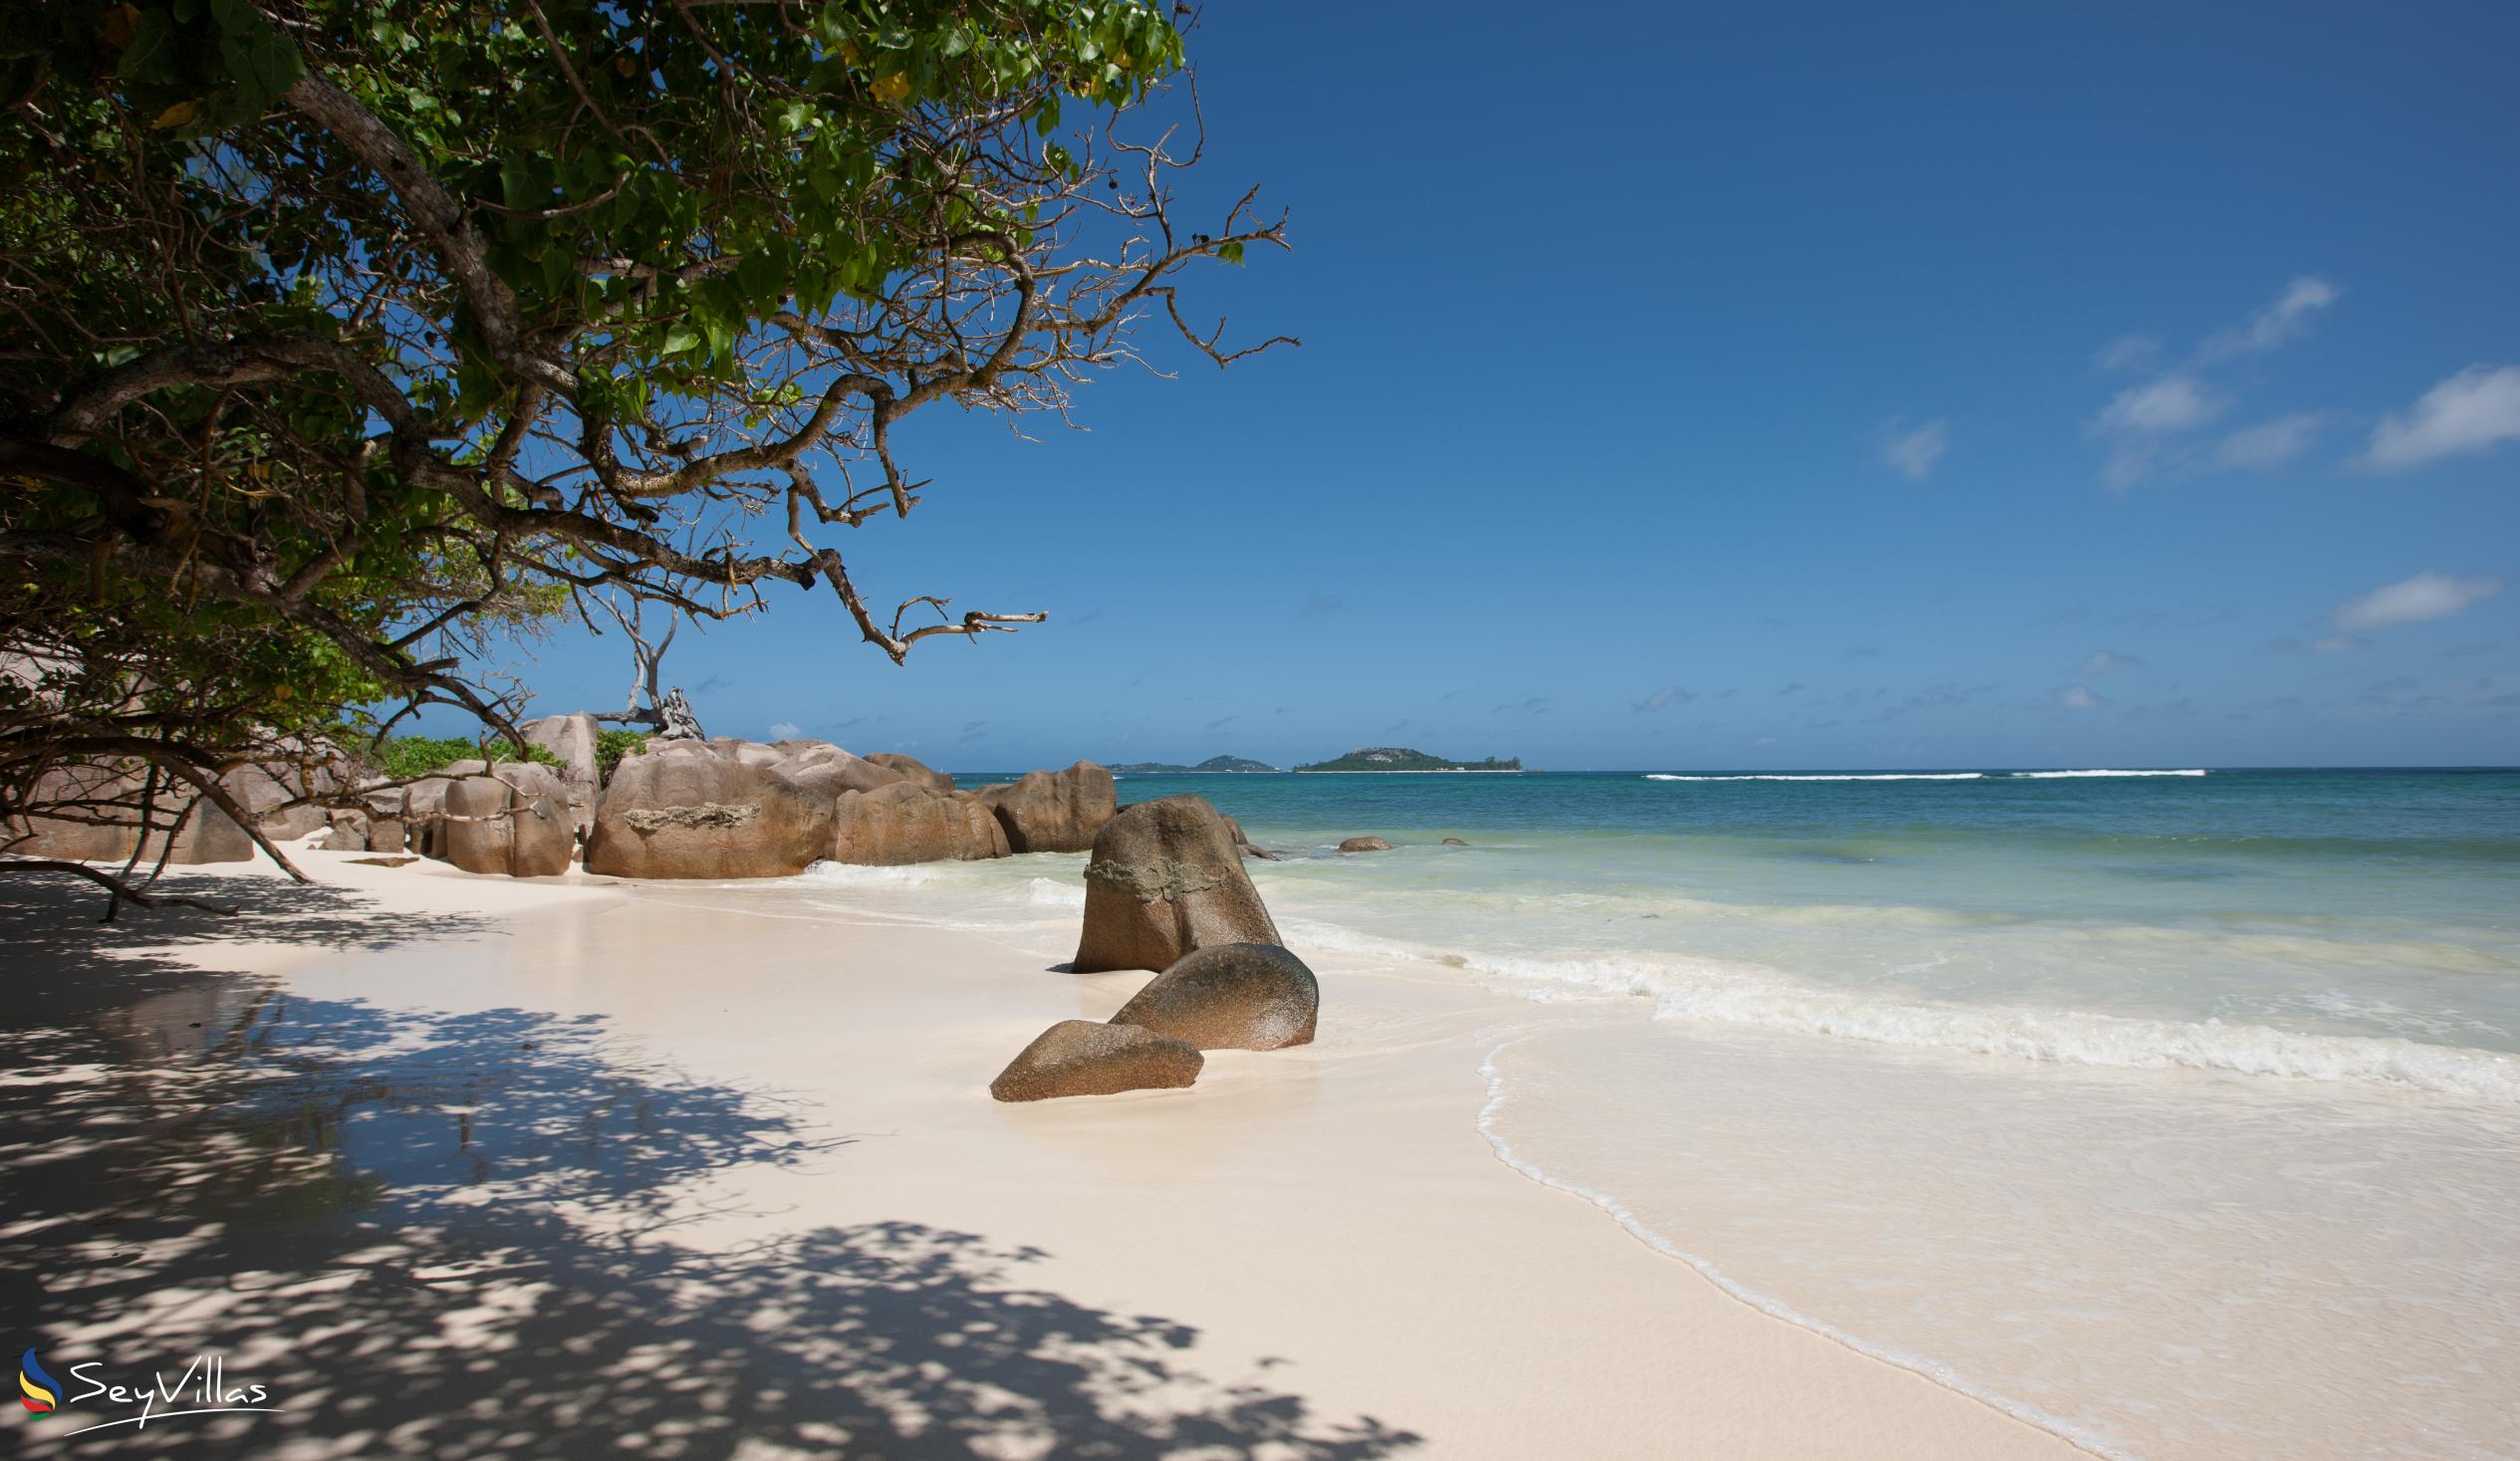 Foto 41: Castello Beach Hotel - Plages - Praslin (Seychelles)